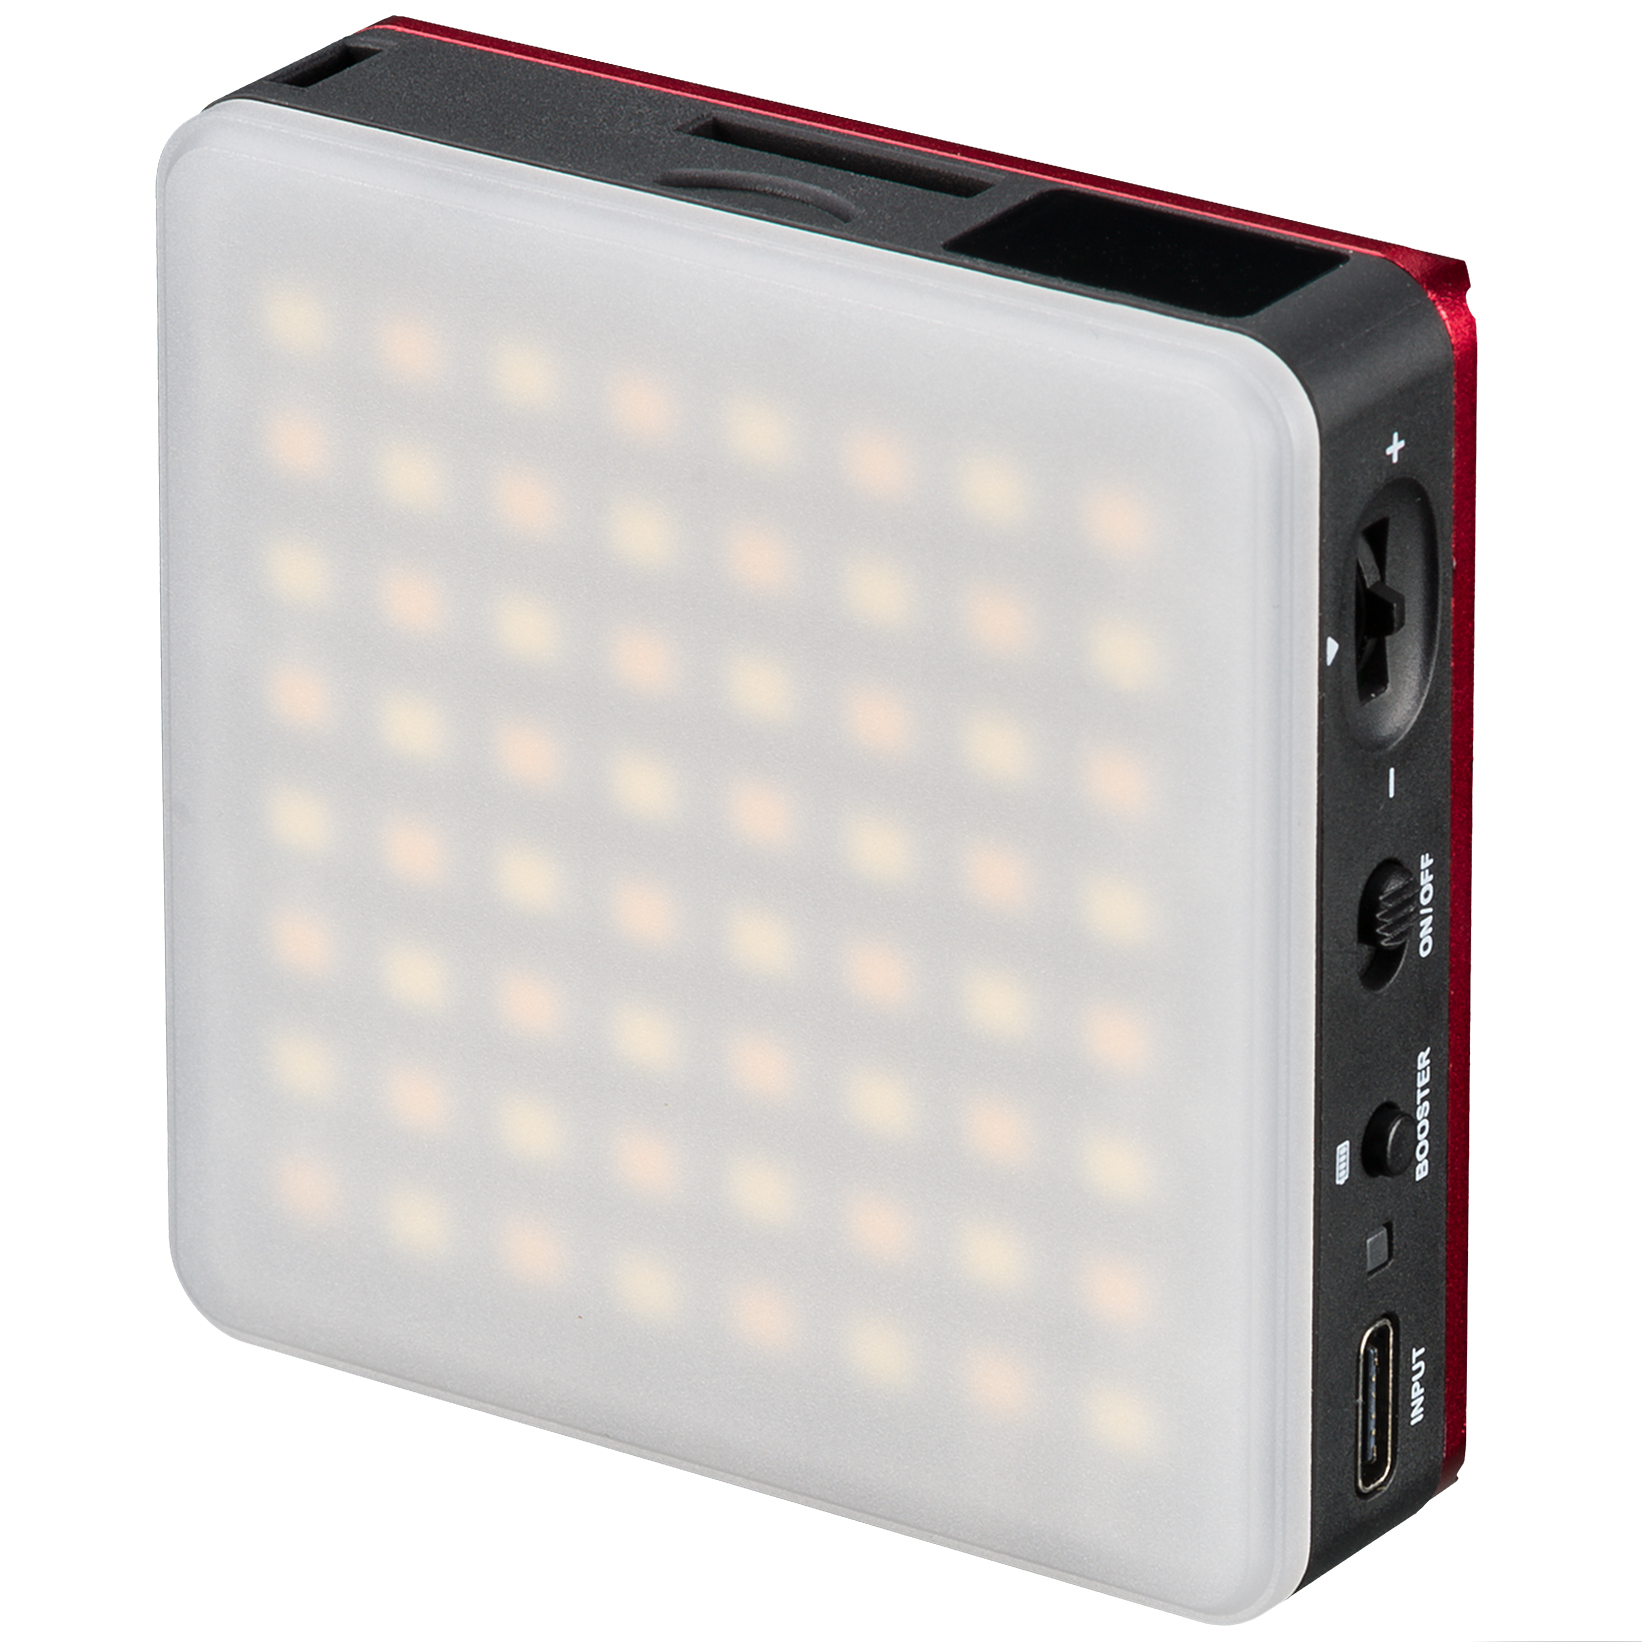 Pannello bicolore LED 5W BRESSER Pocket per lâUso mobile e per Foto con lo Smartphone